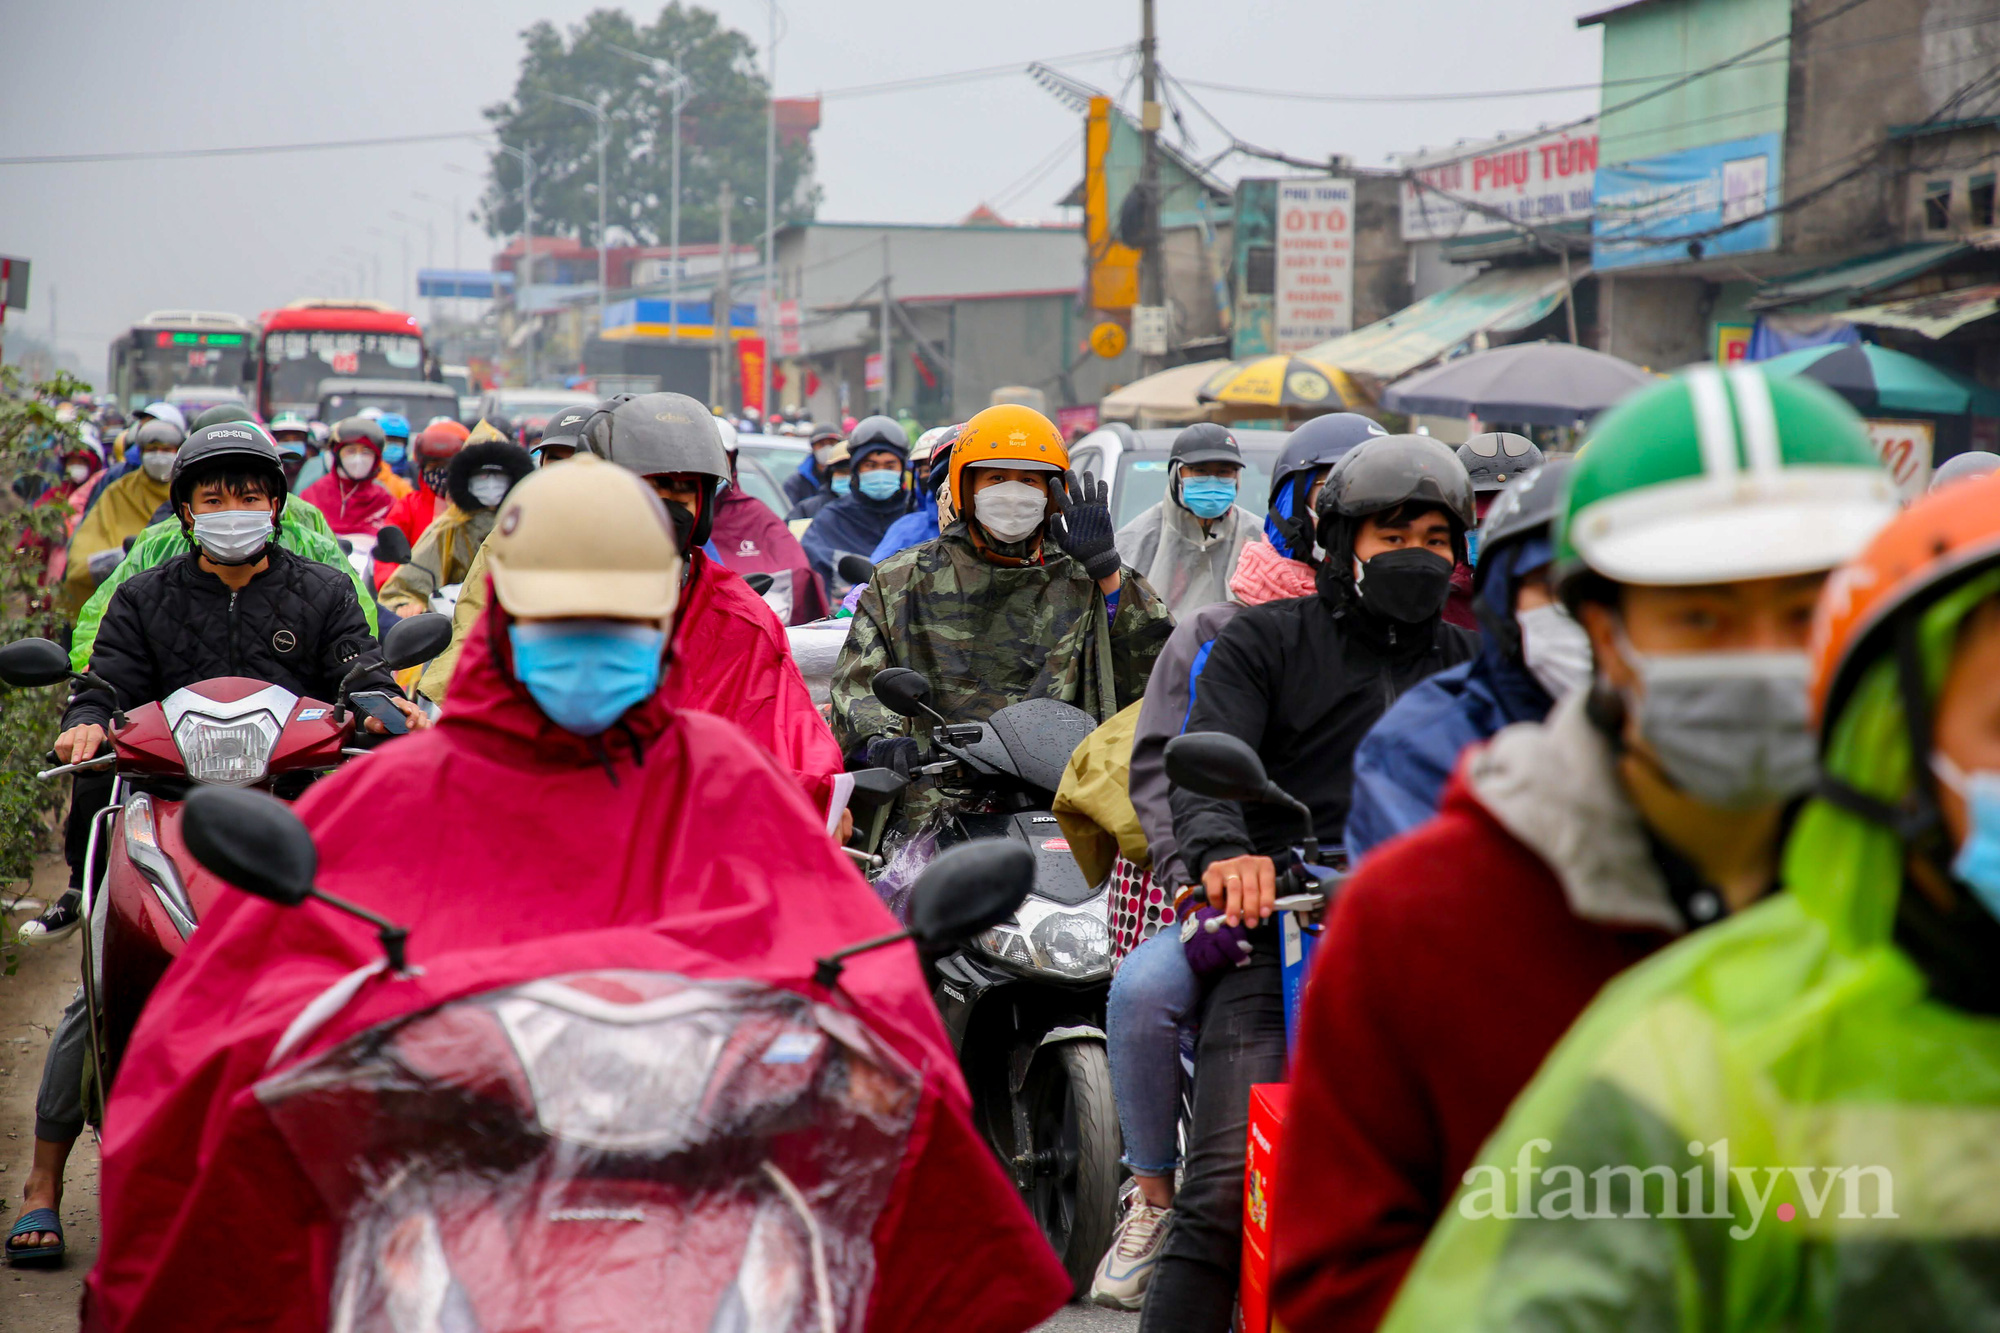 Hà Nội: Hàng nghìn người chạy xe máy trùm kín áo mưa, ùn ùn rời phố về quê ăn Tết - Ảnh 6.